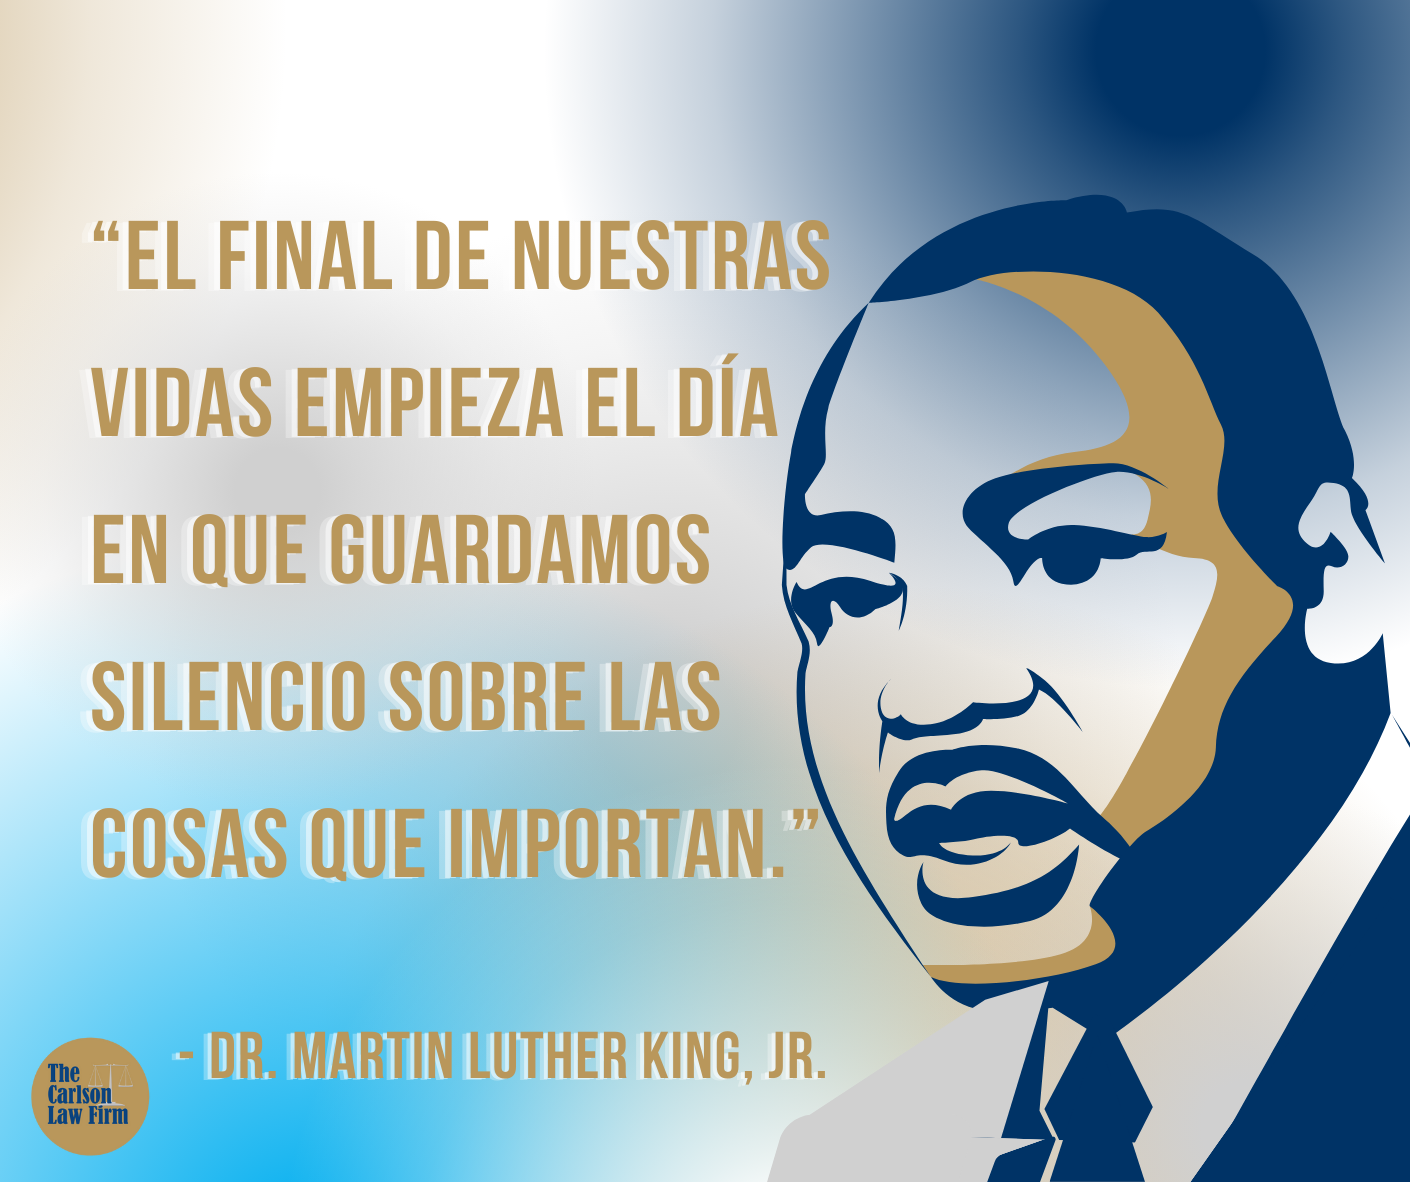 Cita 4 de MLK: “Nuestras vidas comienzan a terminar el día en que guardamos silencio sobre las cosas que importan”.